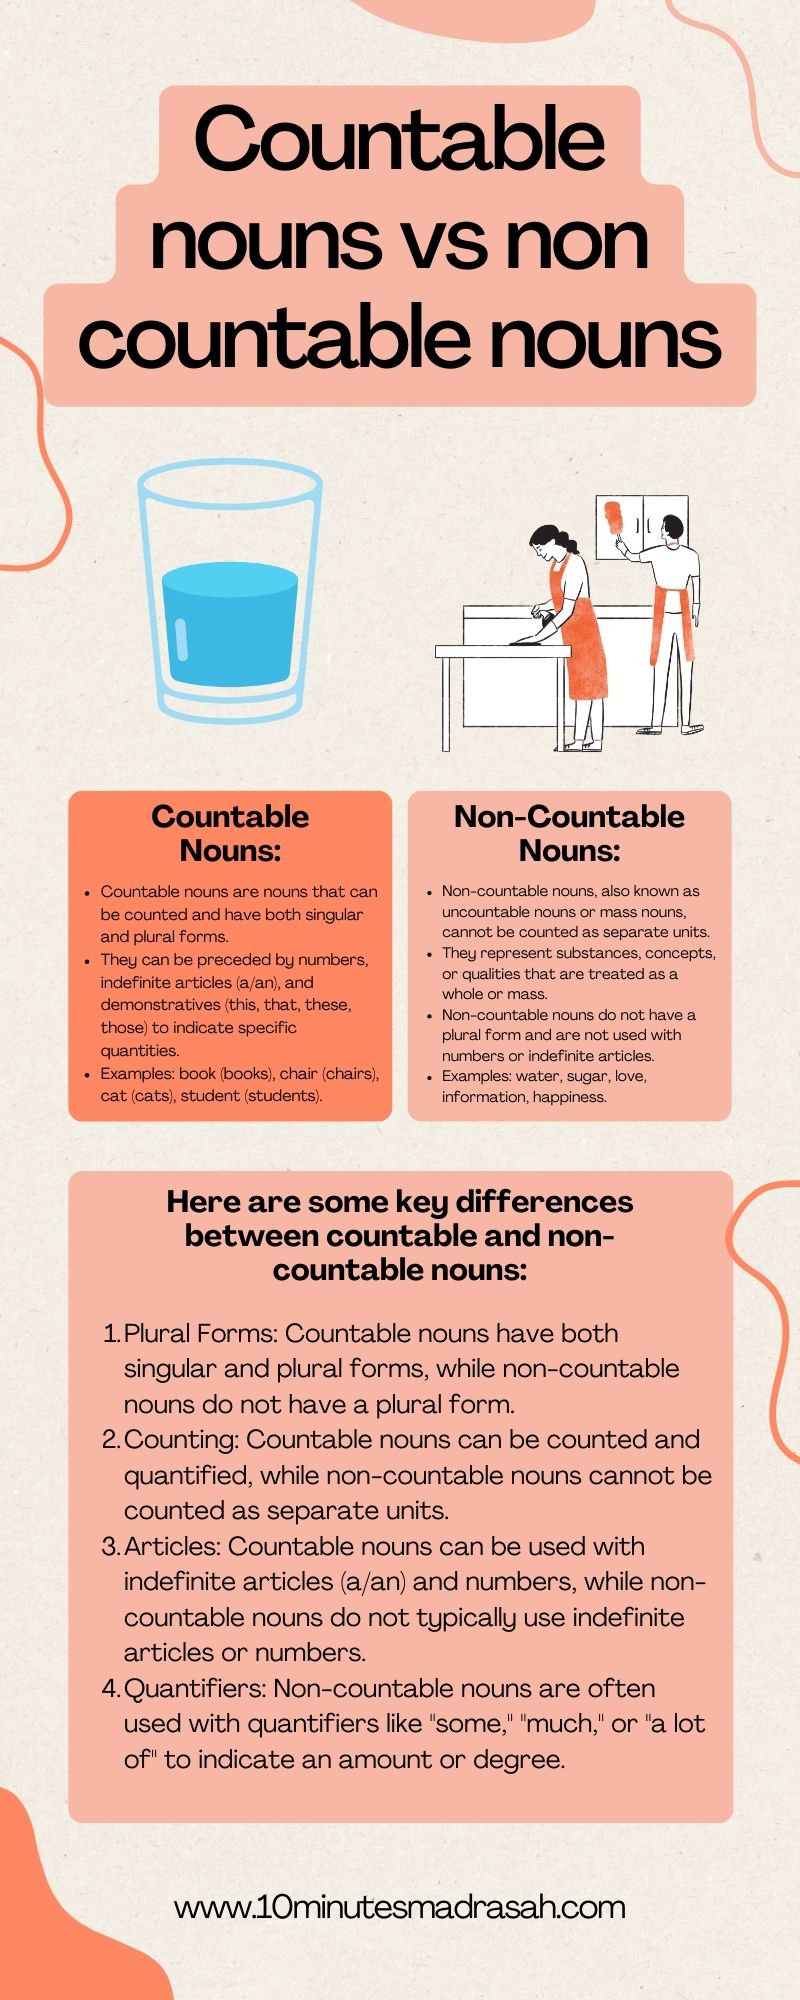 Countable nouns vs non countable nouns